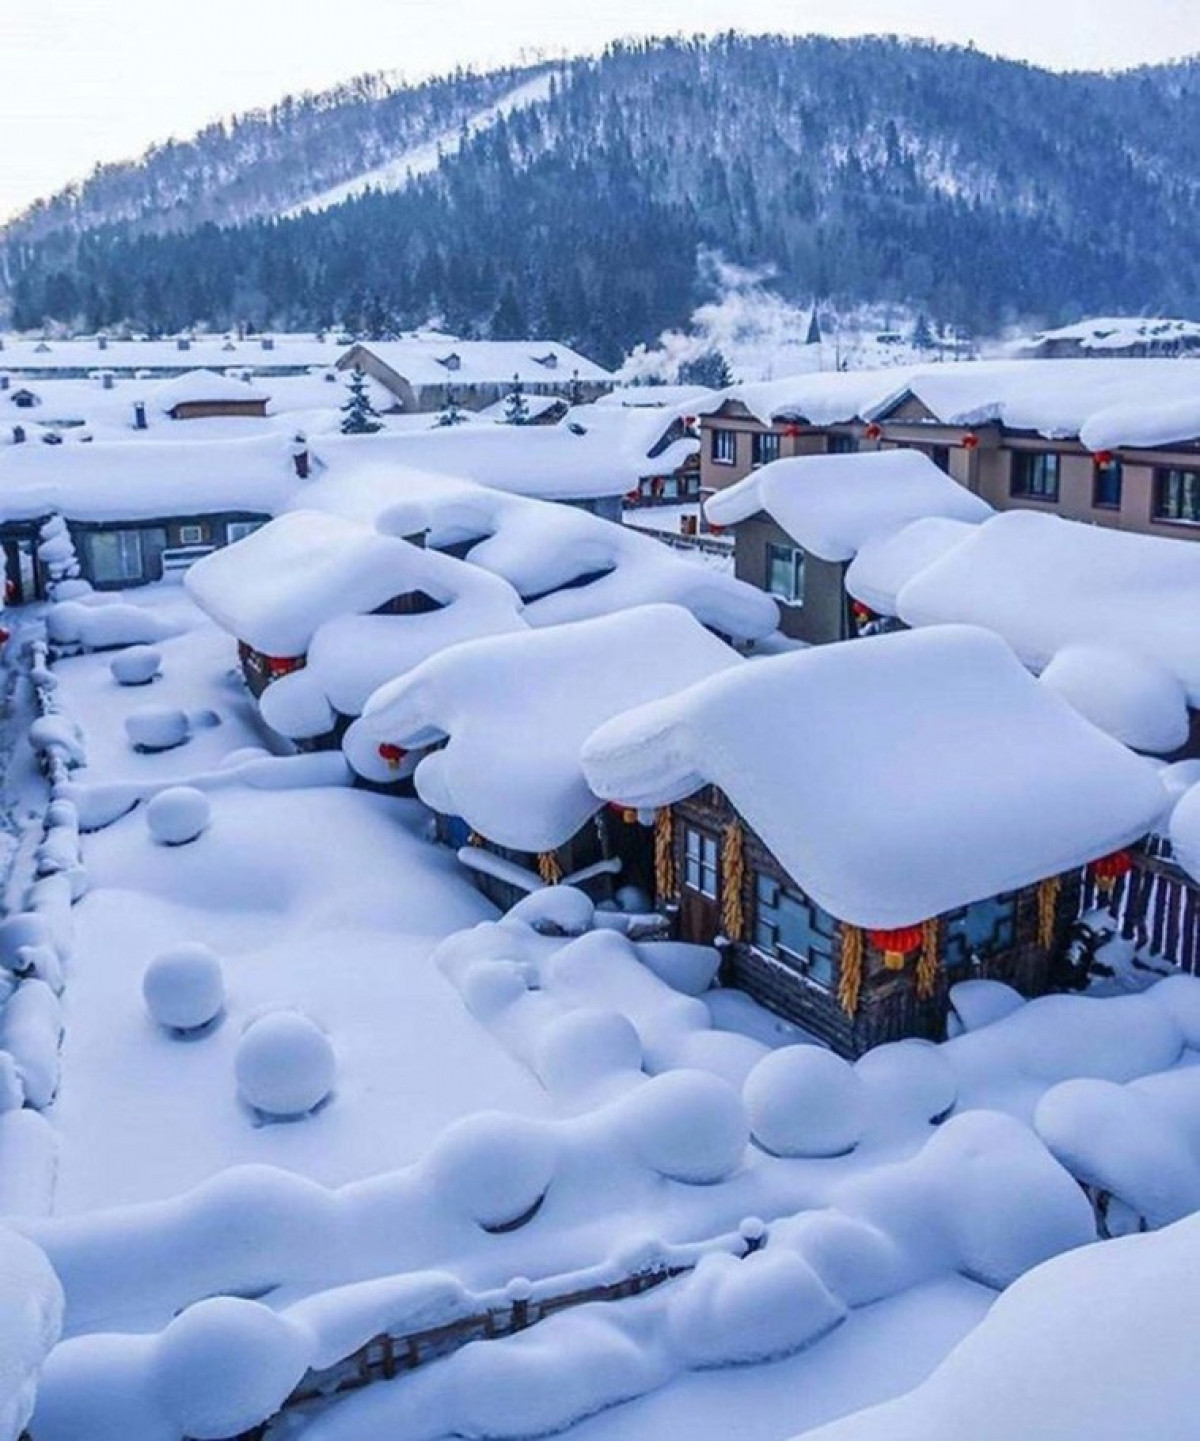 Những lớp tuyết dày xếp thành từng chồng trên mái nhà khiến nơi này trông như một ngôi làng cổ tích.